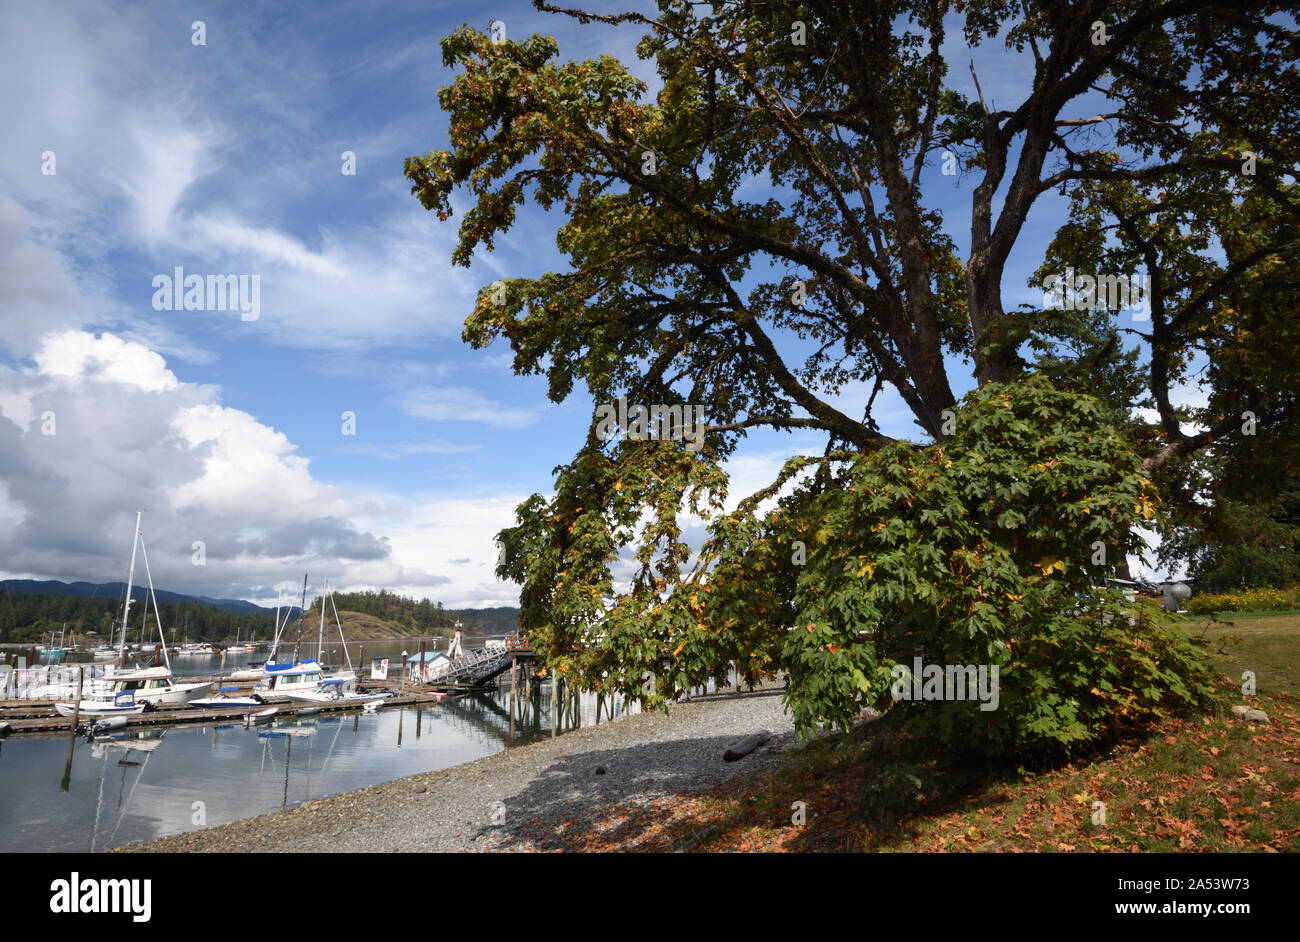 Boote liegen an einem geschützten Steg. Quadra Island, Vancouver Island, British Columbia, Kanada. Stockfoto